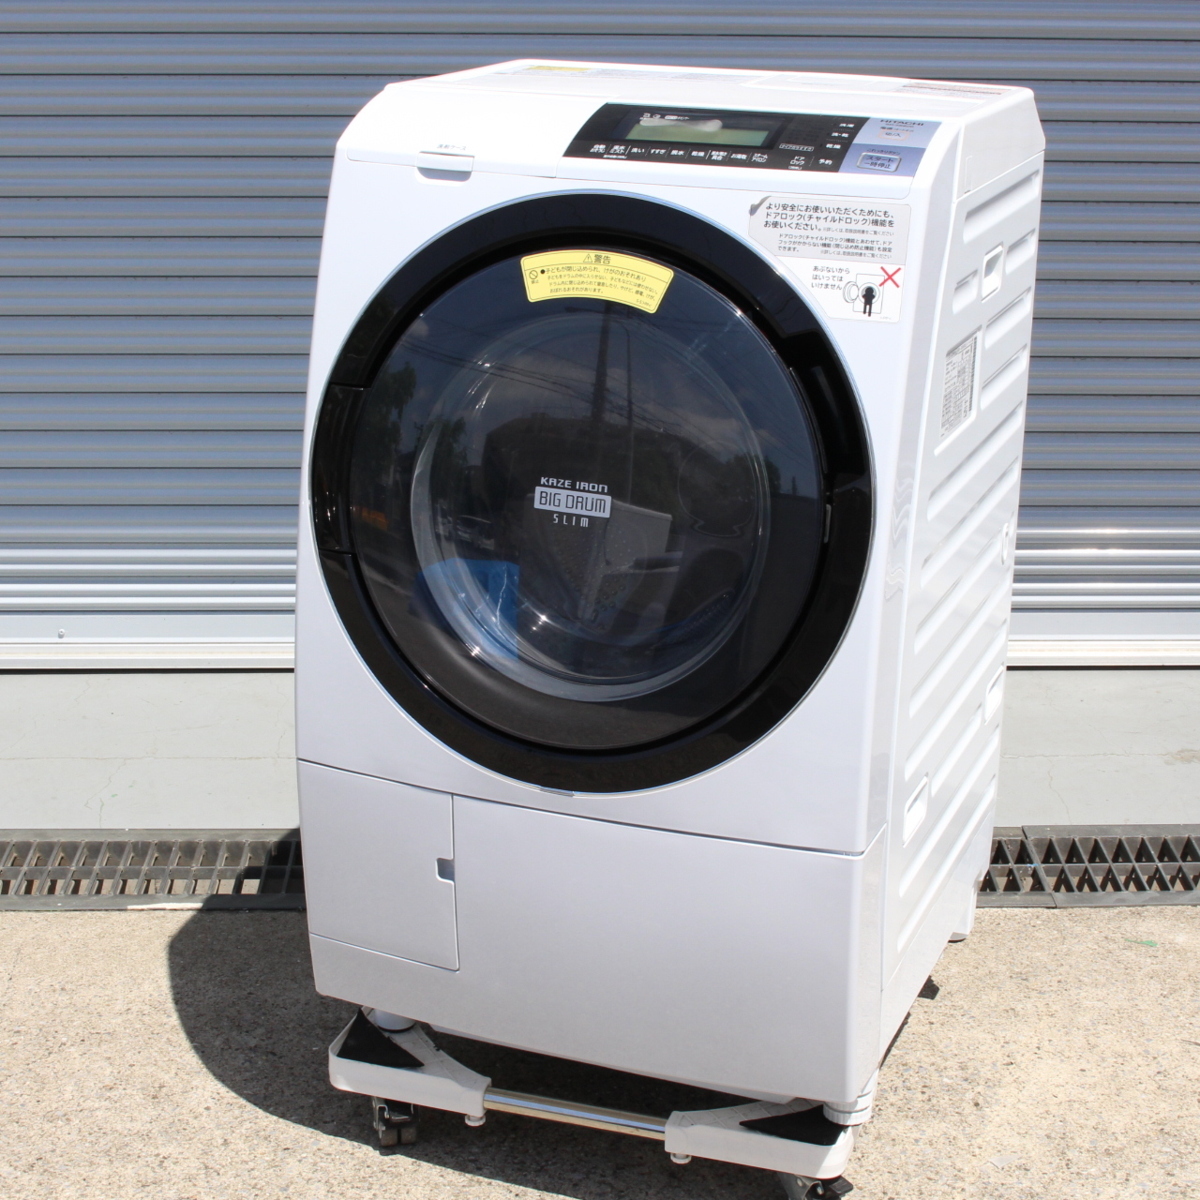 川崎市川崎区にて 日立 ドラム式洗濯機 BD-S8800L 2016年製 を出張買取させて頂きました。